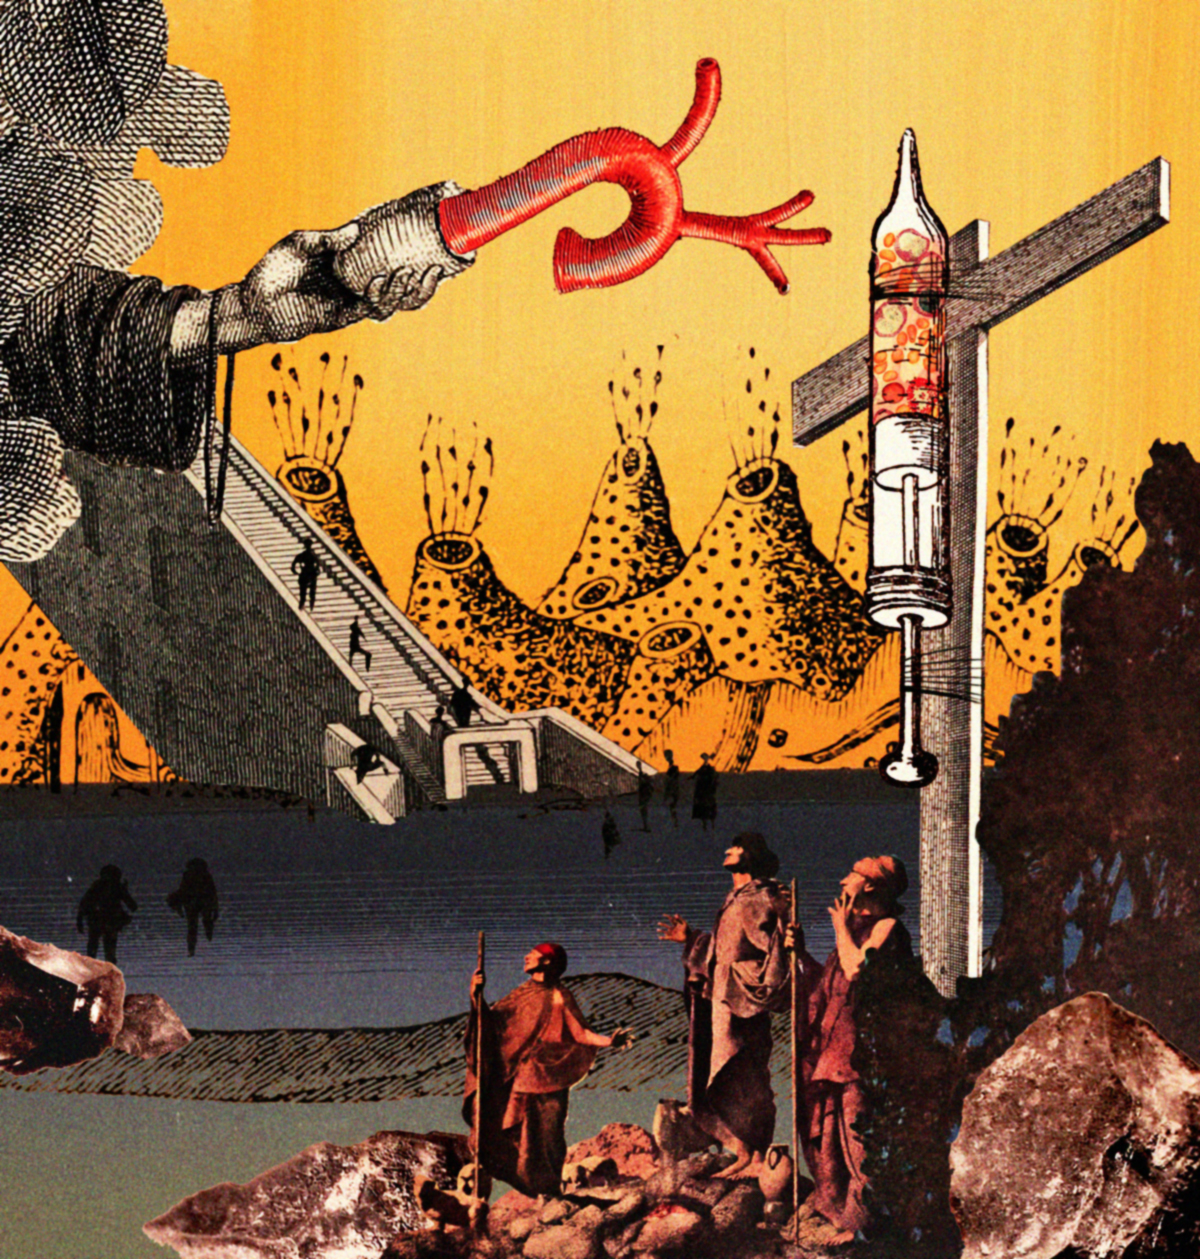 Scifi collage surreal fantasy magazine 1950s colorful anatomy futuristic Dystopia